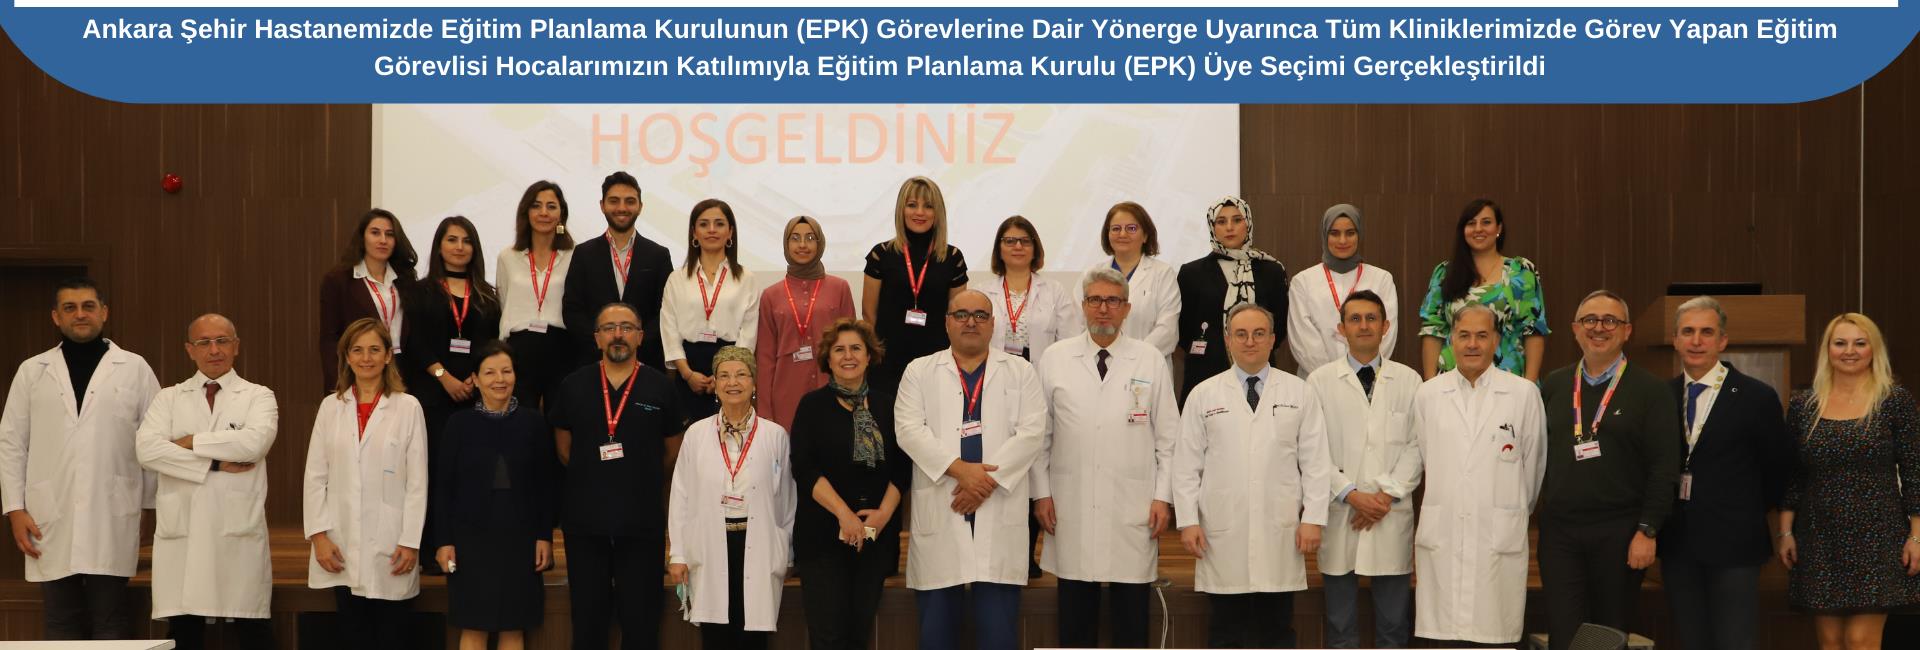 Ankara Şehir Hastanemizde Eğitim Planlama Kurulunun (EPK) Üye Seçimi Gerçekleştirildi.